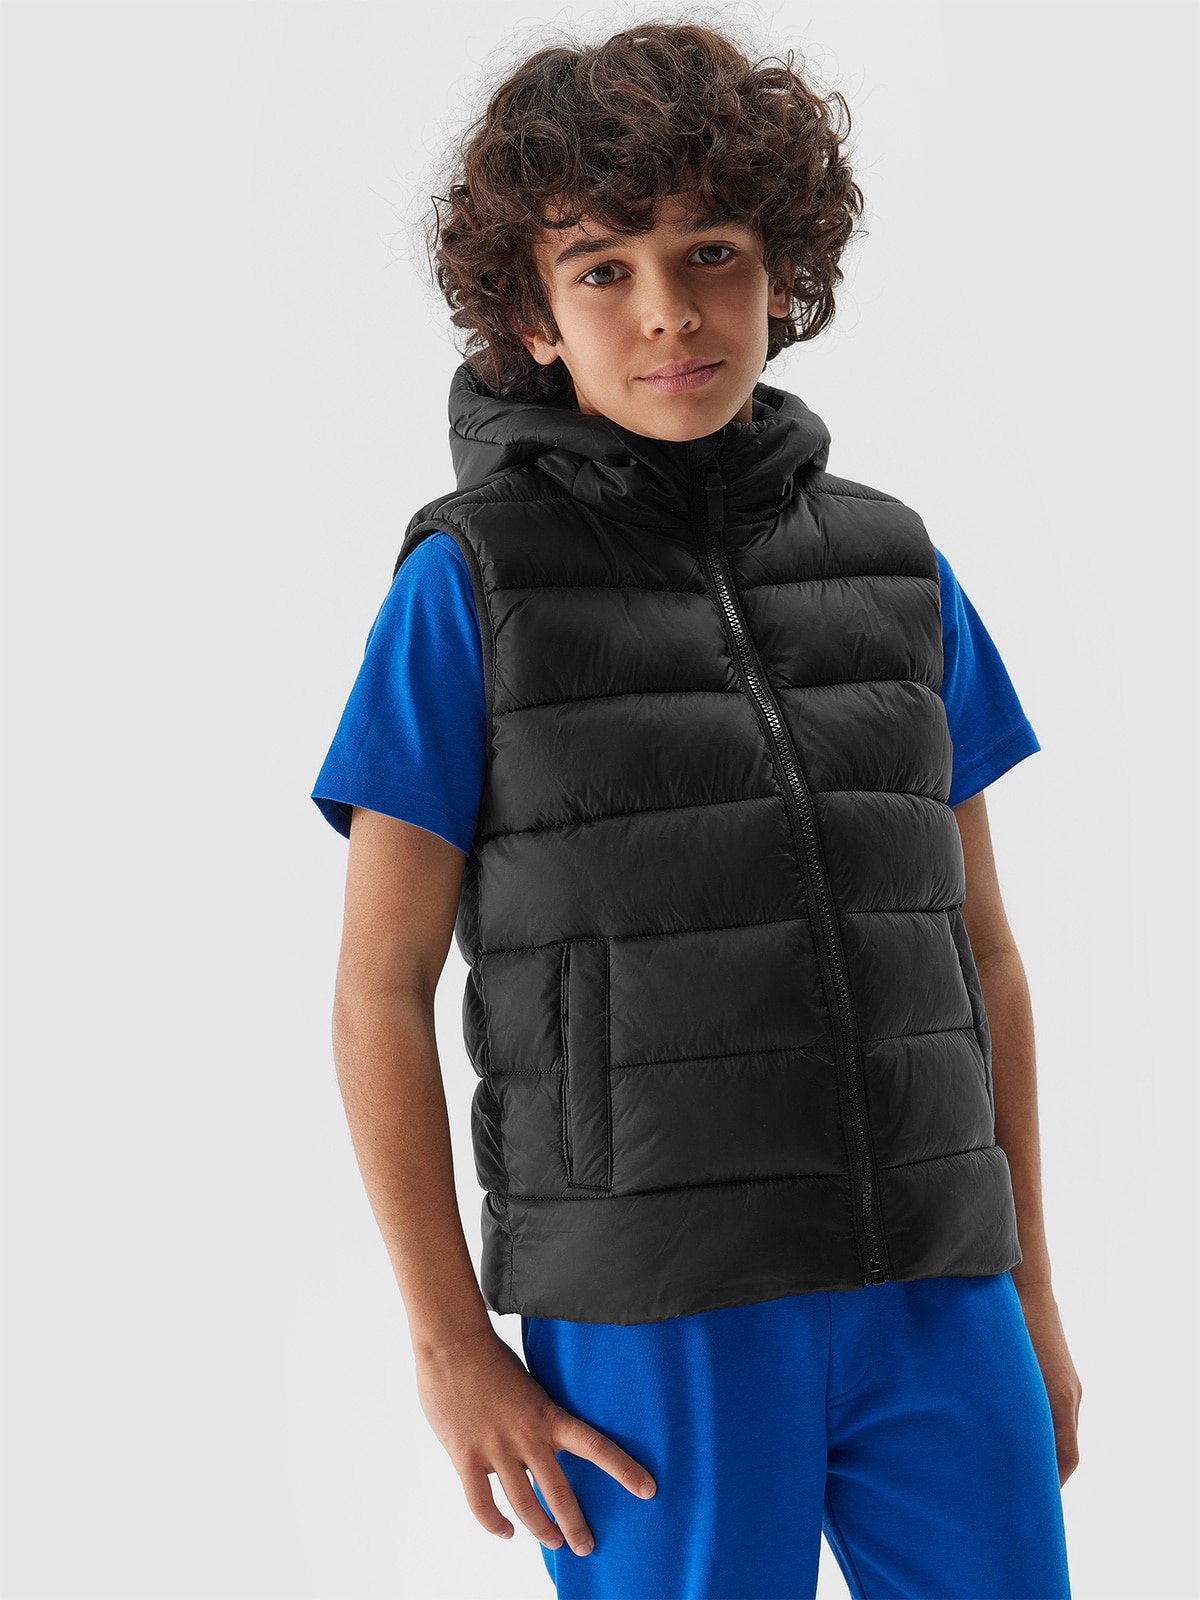 Chlapecká péřová vesta s výplní ze syntetického peří - hluboce černá